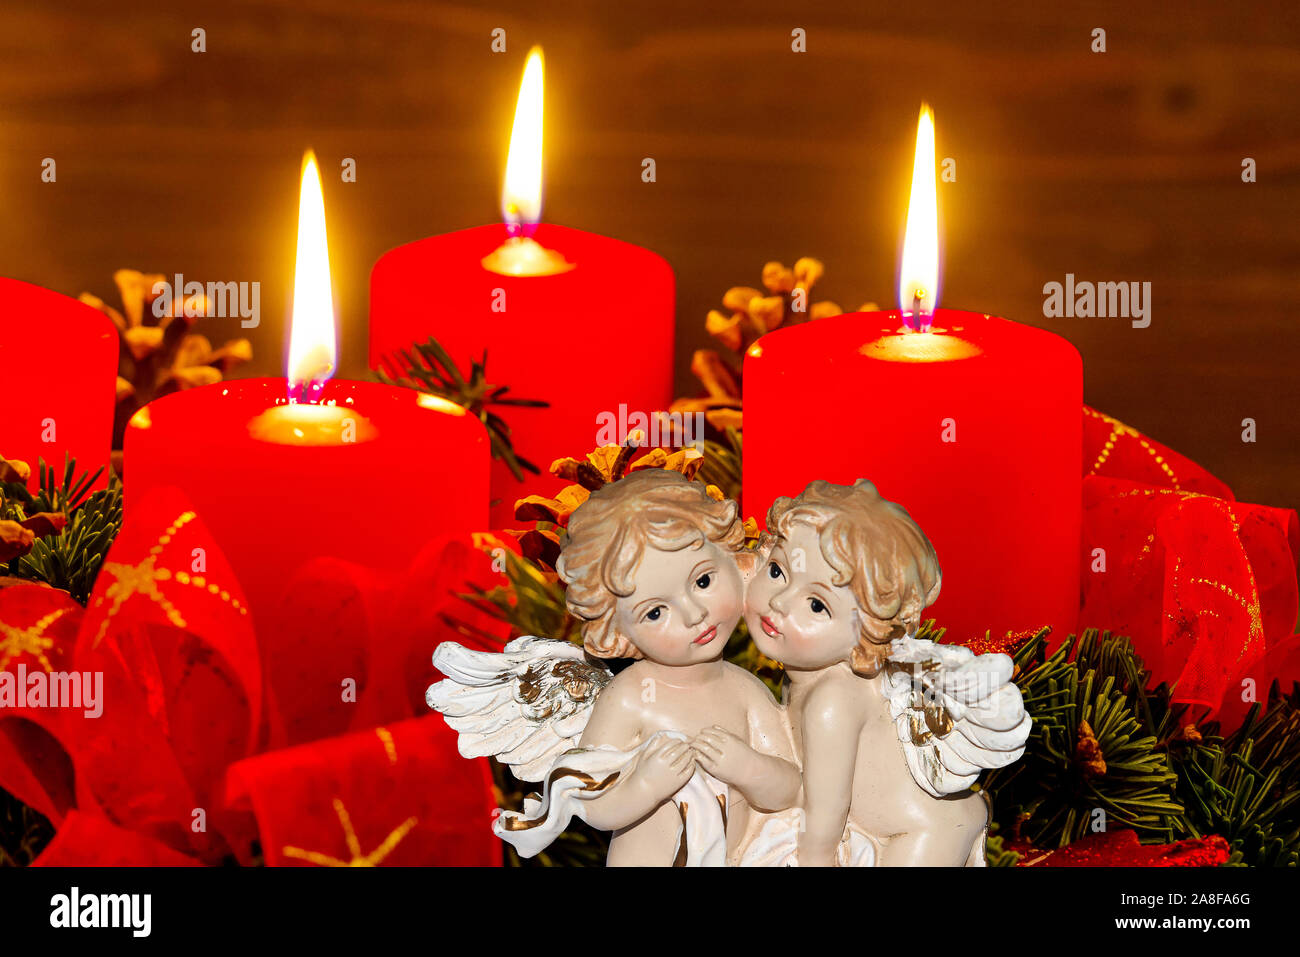 Ein Adventskranz zu Weihnachten sorgt für romatinsche Stimmung in der  stillen Advent Zeit. 3 brennende Kerzen, 3. Advent, Zwei Engel,  weihnachtsengel Stock Photo - Alamy